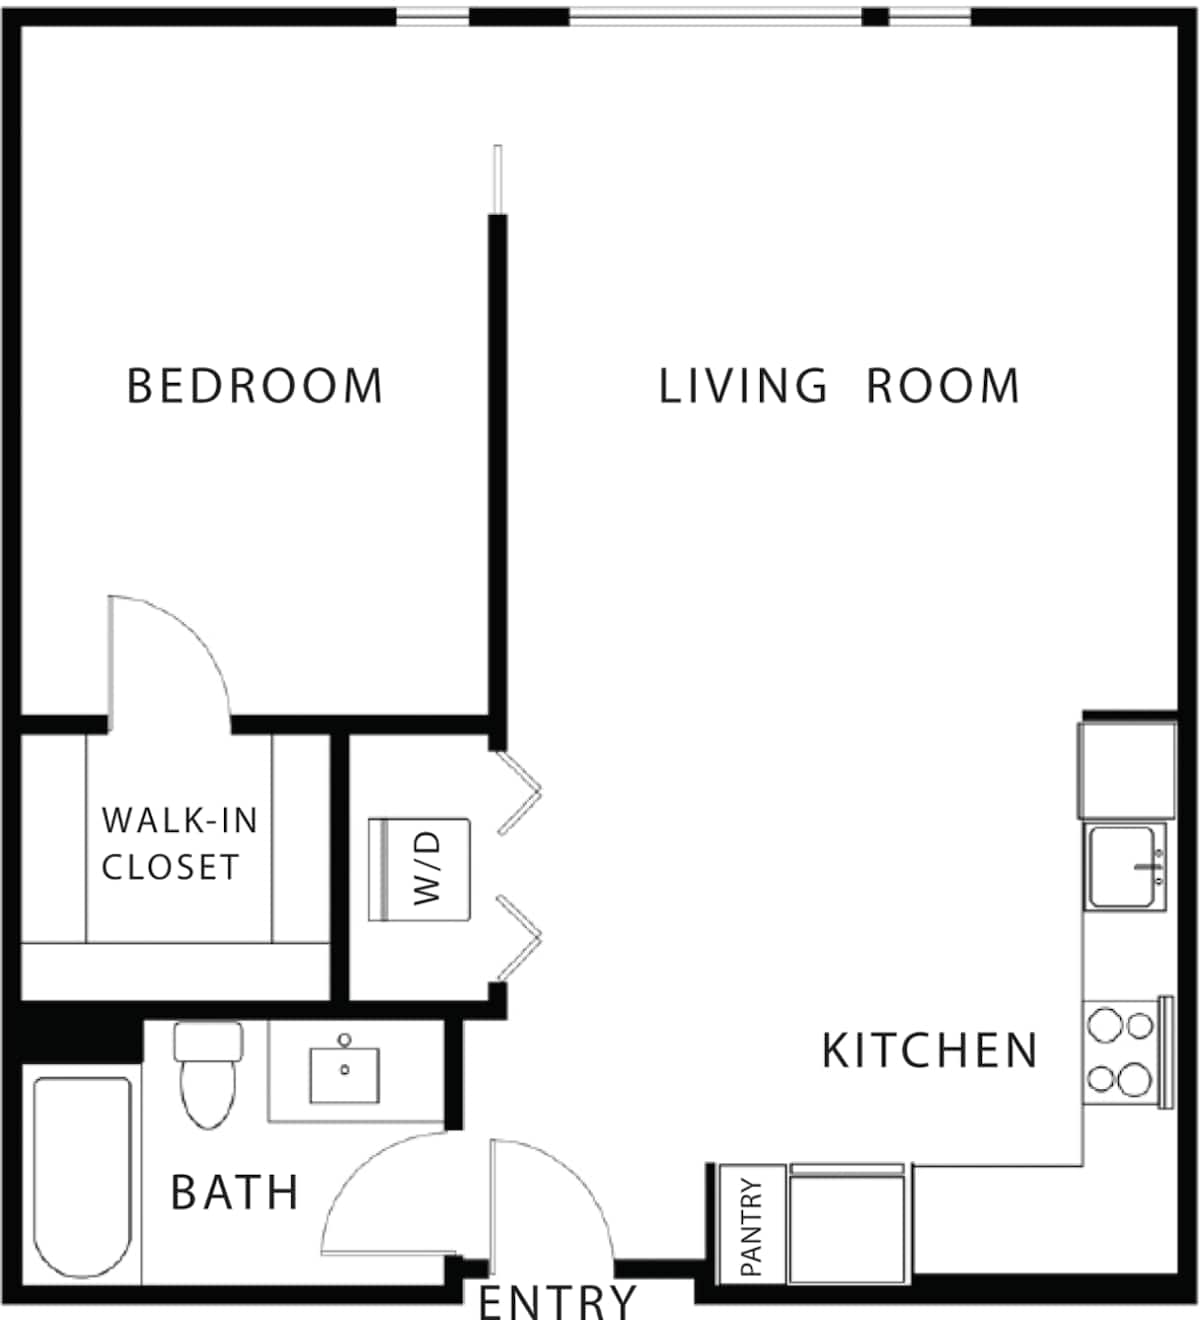 Floorplan diagram for 1.11, showing 1 bedroom